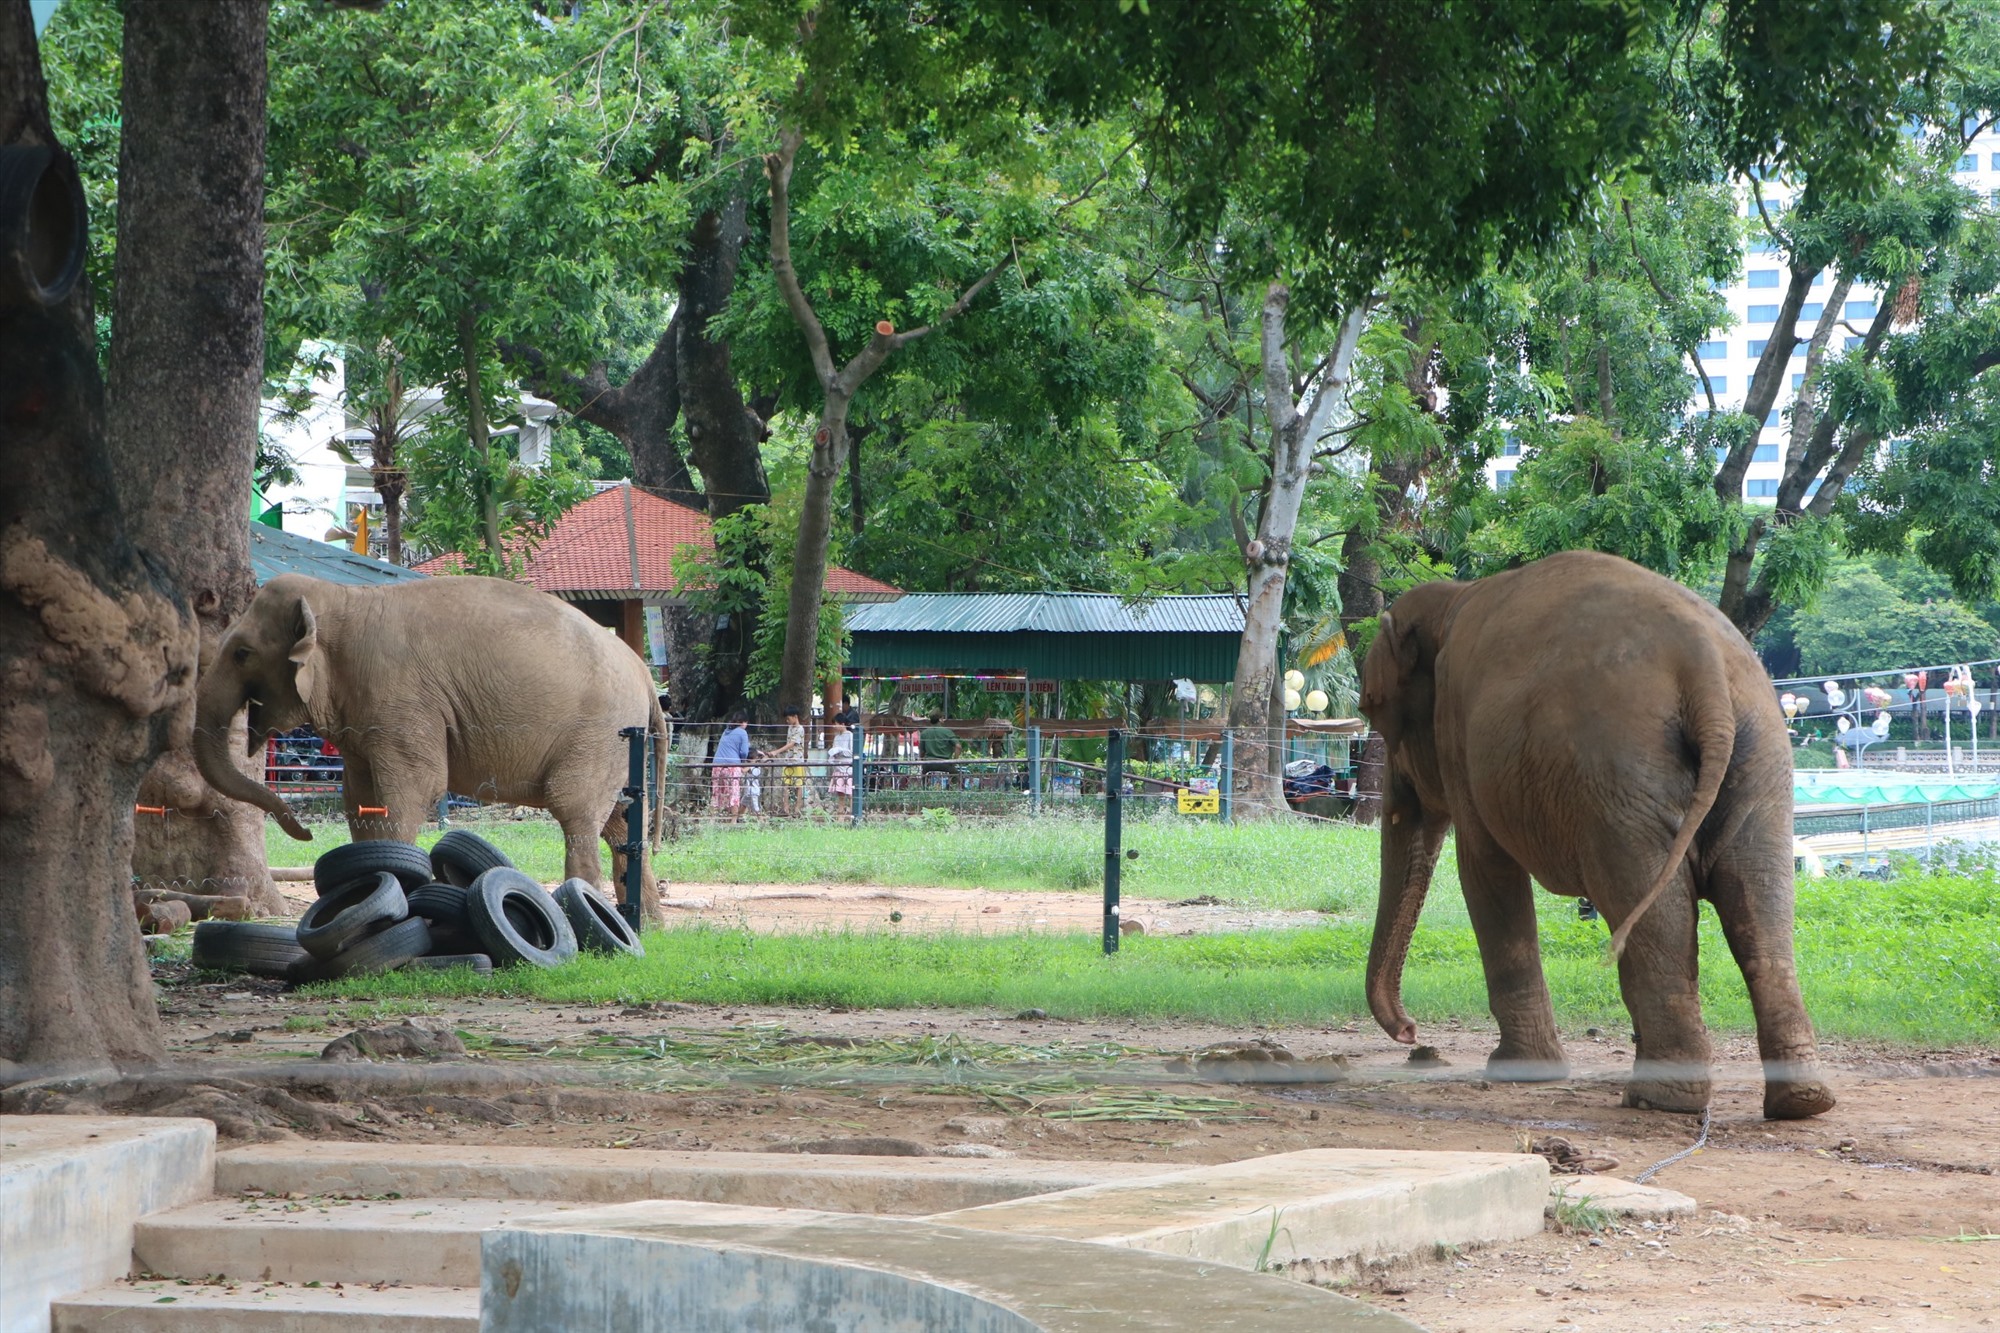 Chị Khánh Linh (trú Thanh Xuân, Hà Nội) cho biết, chị cũng thường xuyên mang con em mình đến vườn thú Hà Nội để vui chơi, tìm hiểu. Thế nhưng, việc các cá thể voi ở đây bị xích chân, chỉ di chuyển trong một bán kính rất hẹp làm chị thấy thương và không hài lòng.